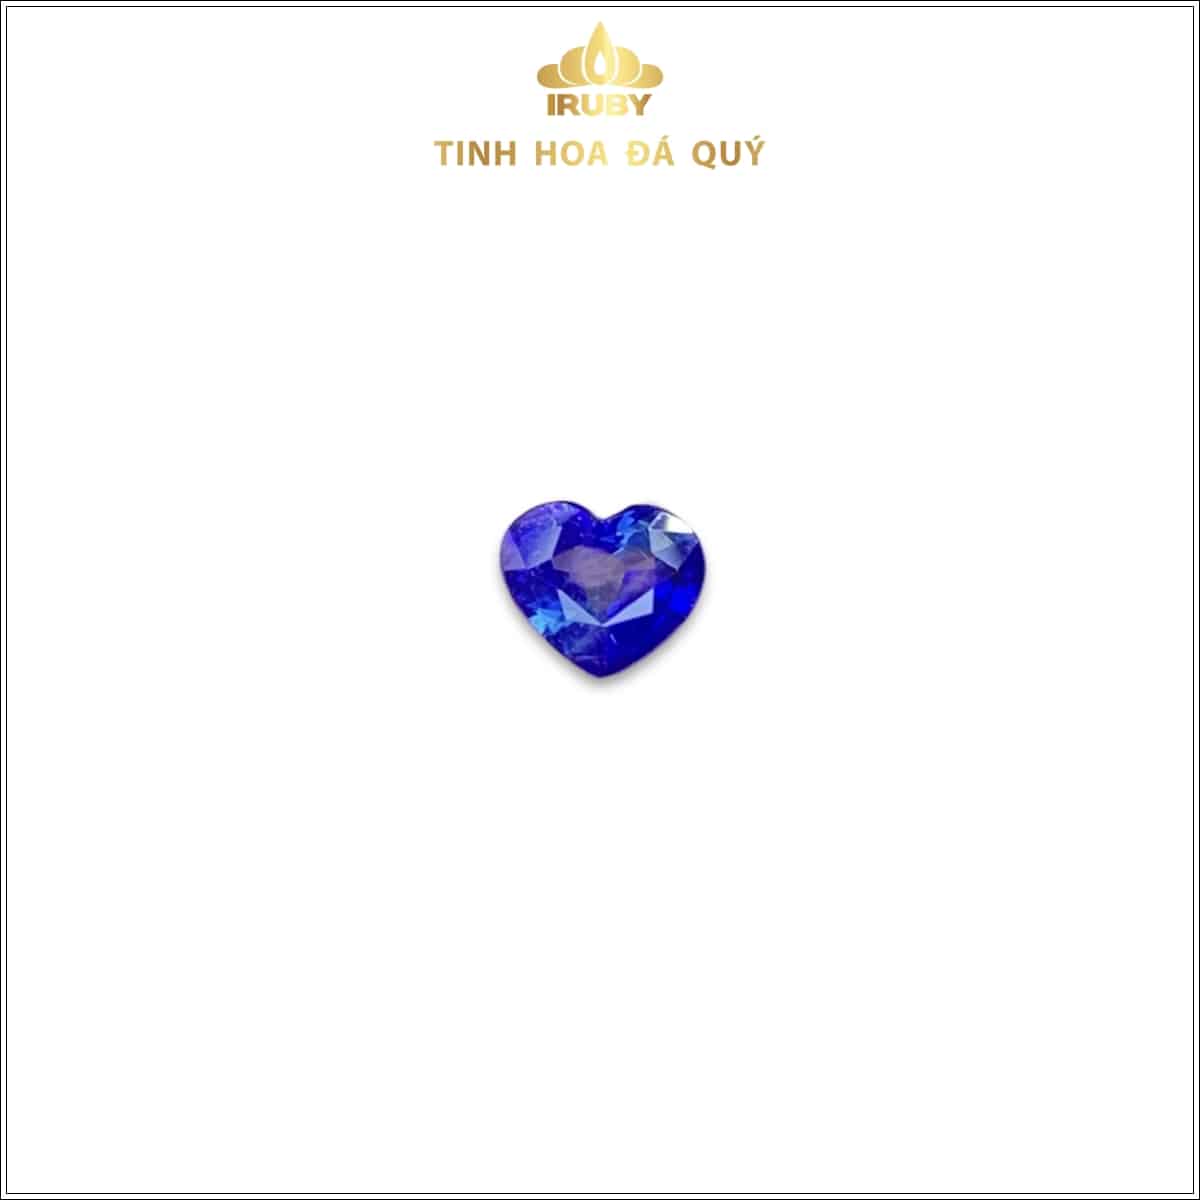 Viên Sapphire xanh lam trái tim Hoàng Gia 0,66ct - IRSP 234066